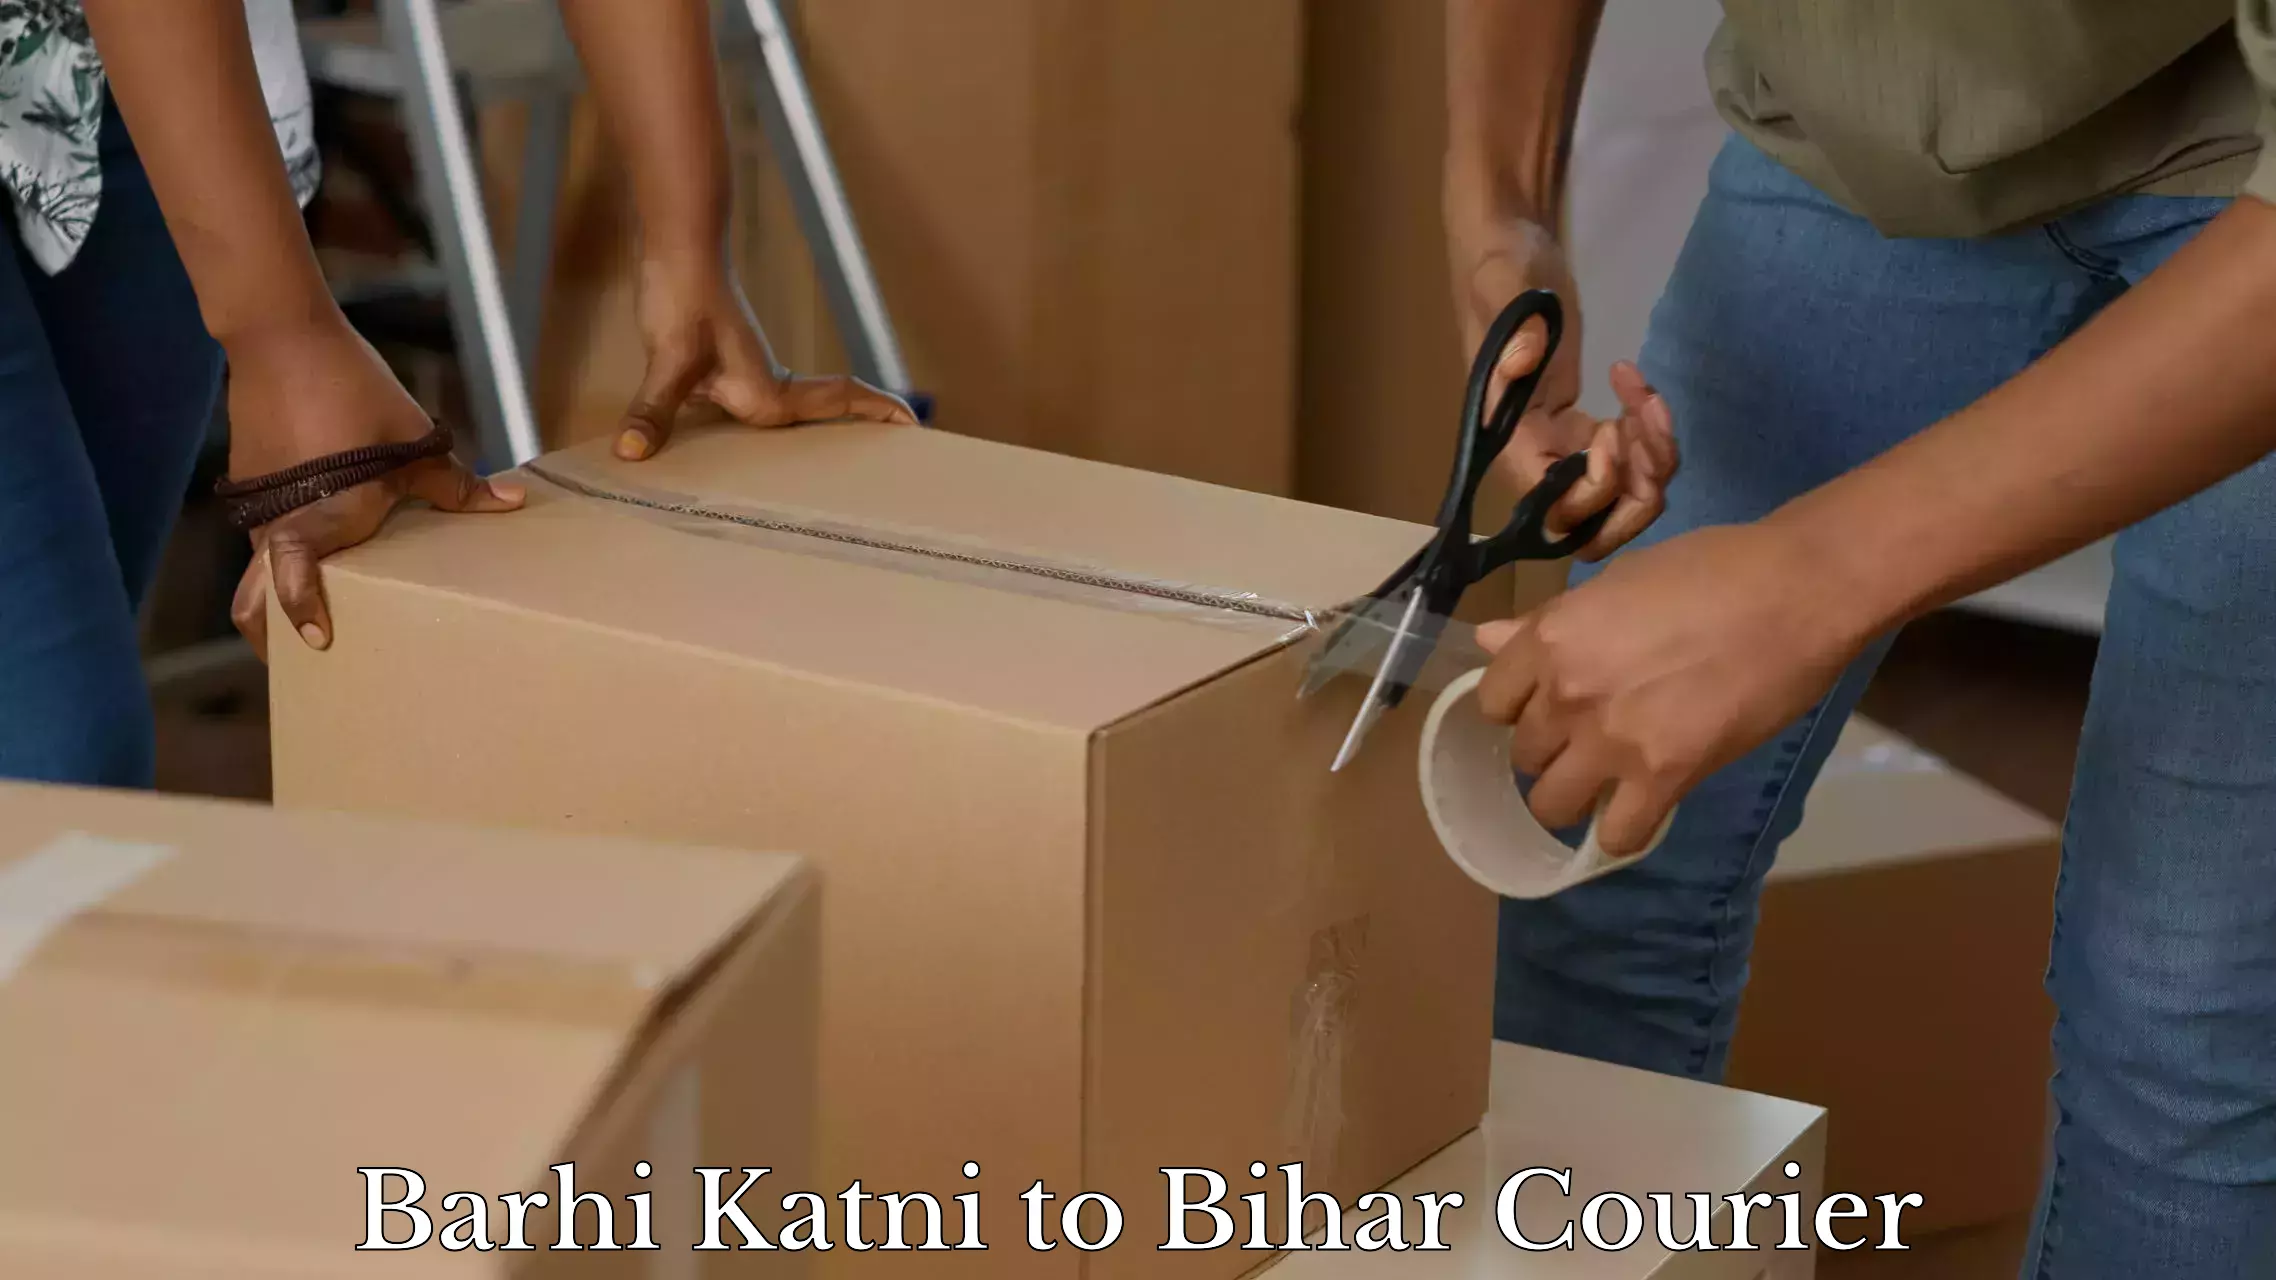 Doorstep luggage pickup Barhi Katni to Bihar